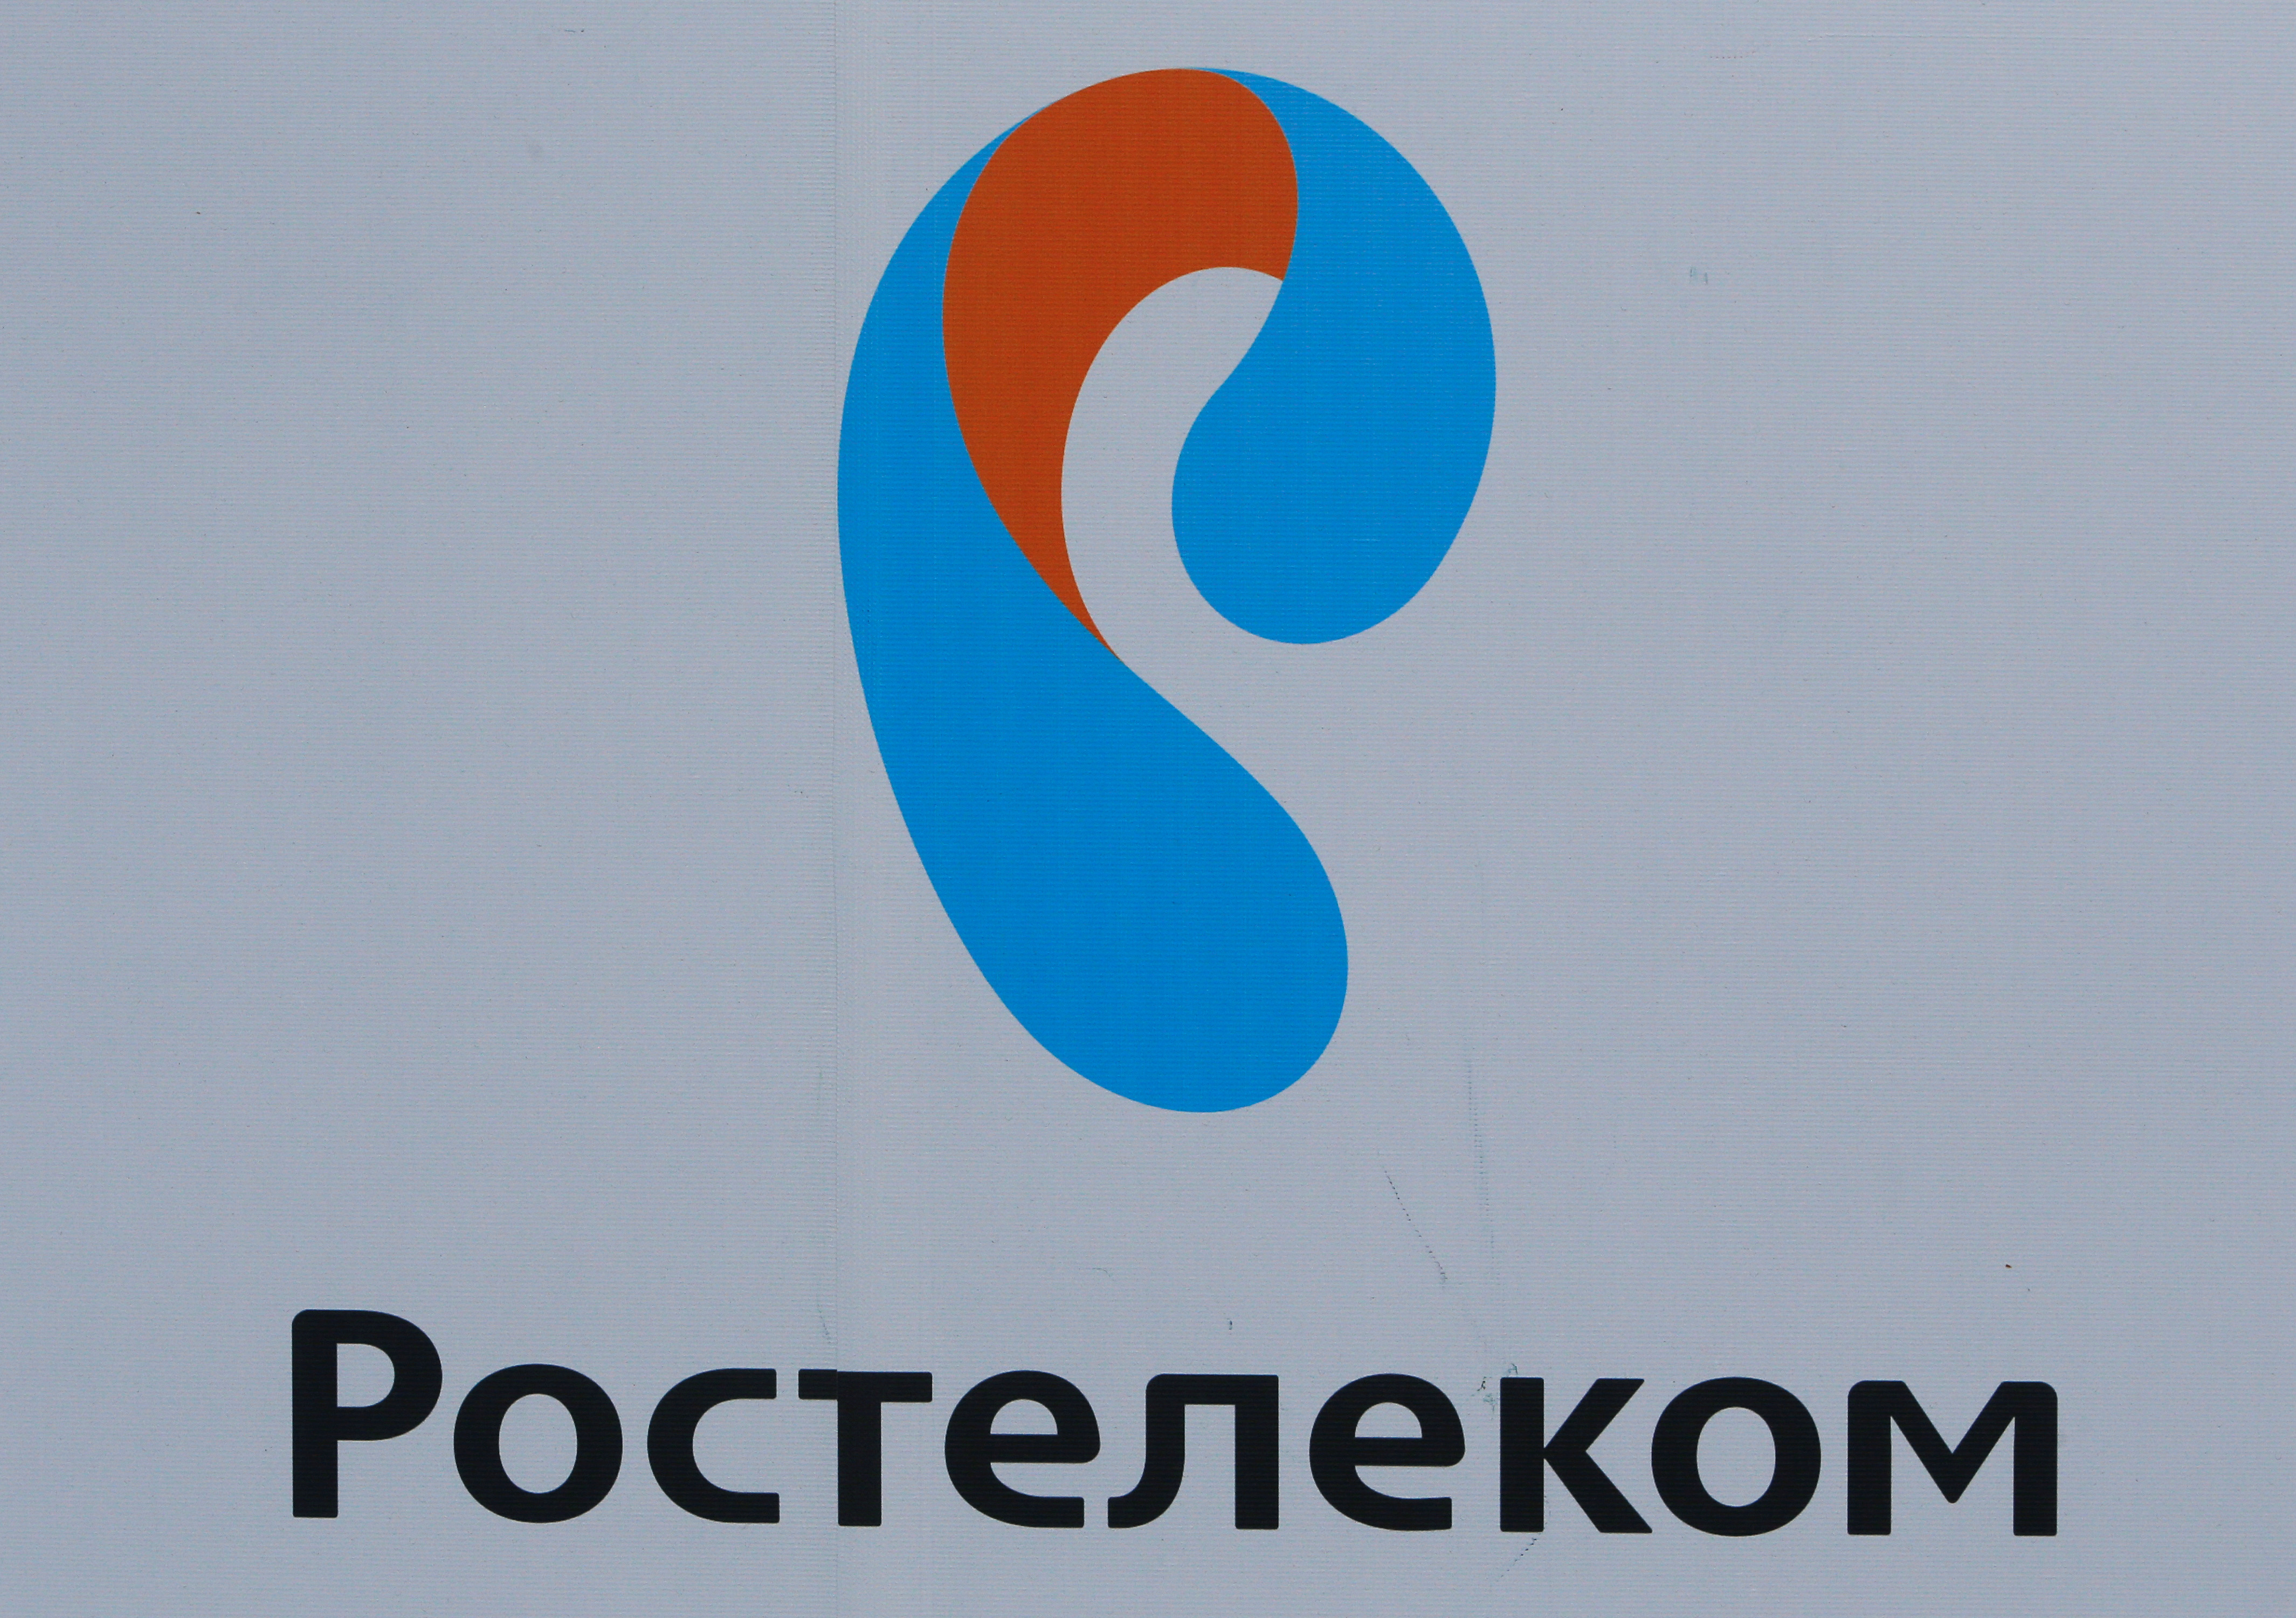 ロシア、国営通信子会社のノキア合弁事業買収を承認